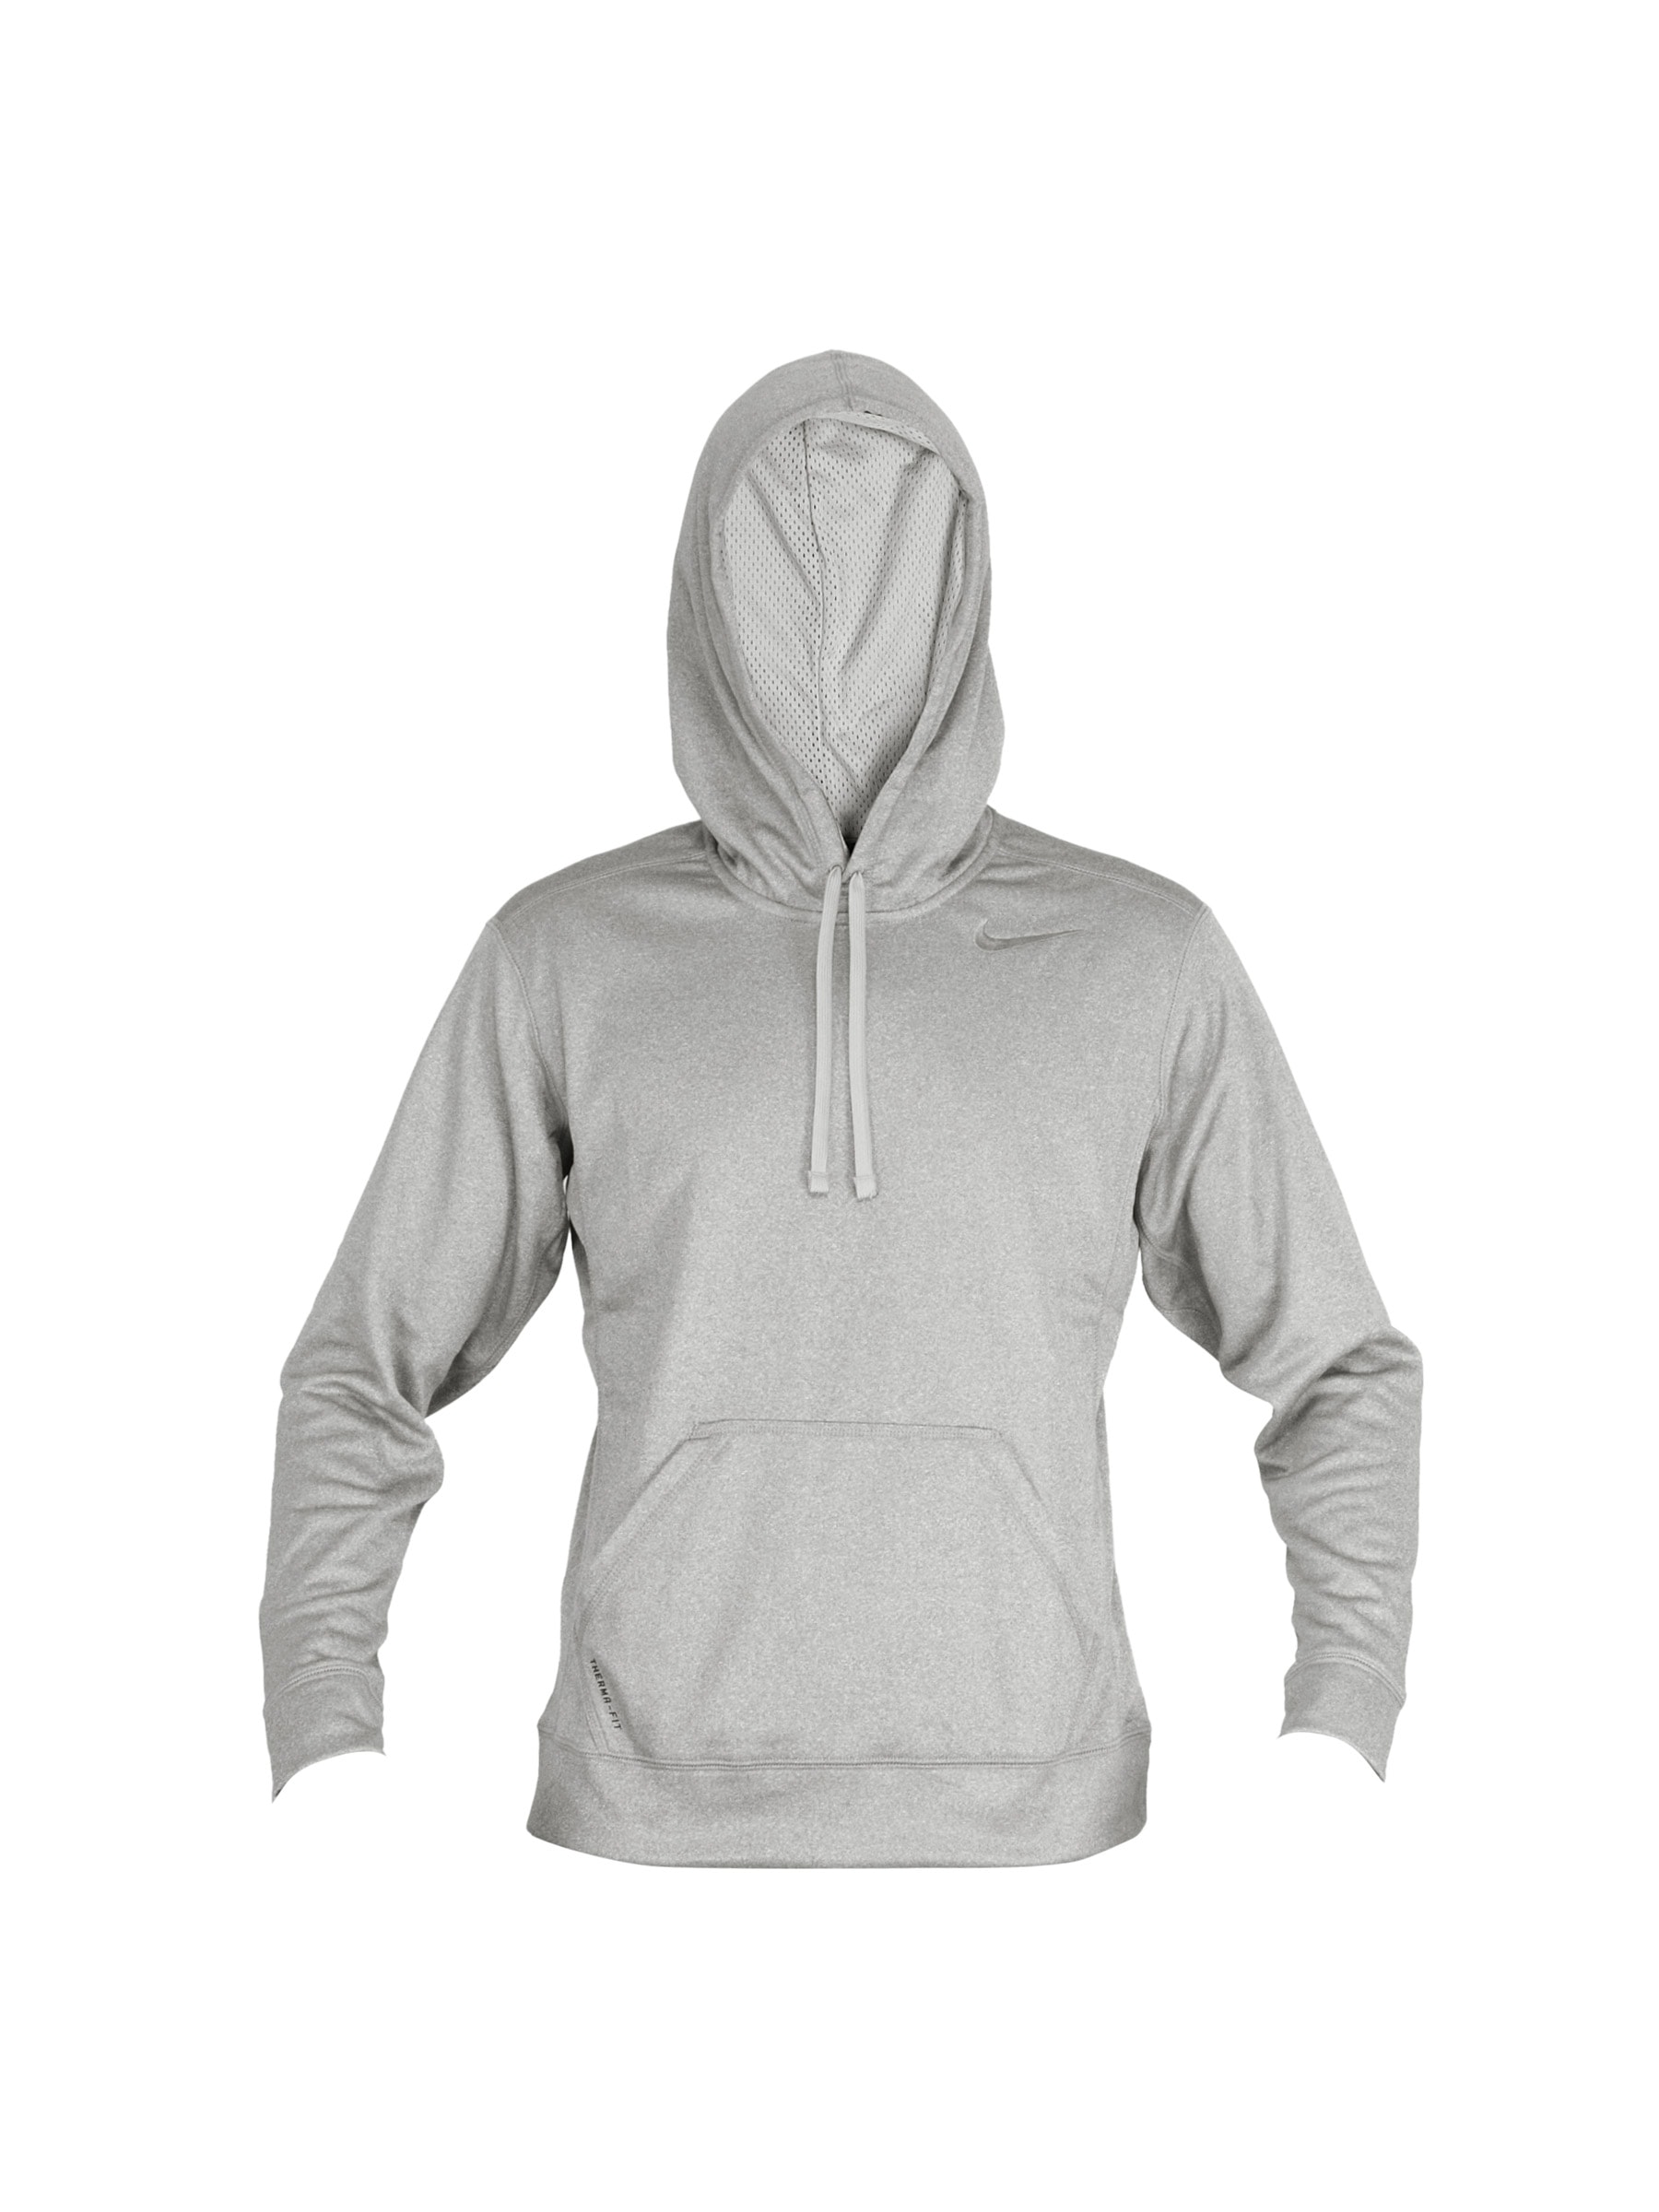 Nike Men Poly Fleece Grey Sweatshirt